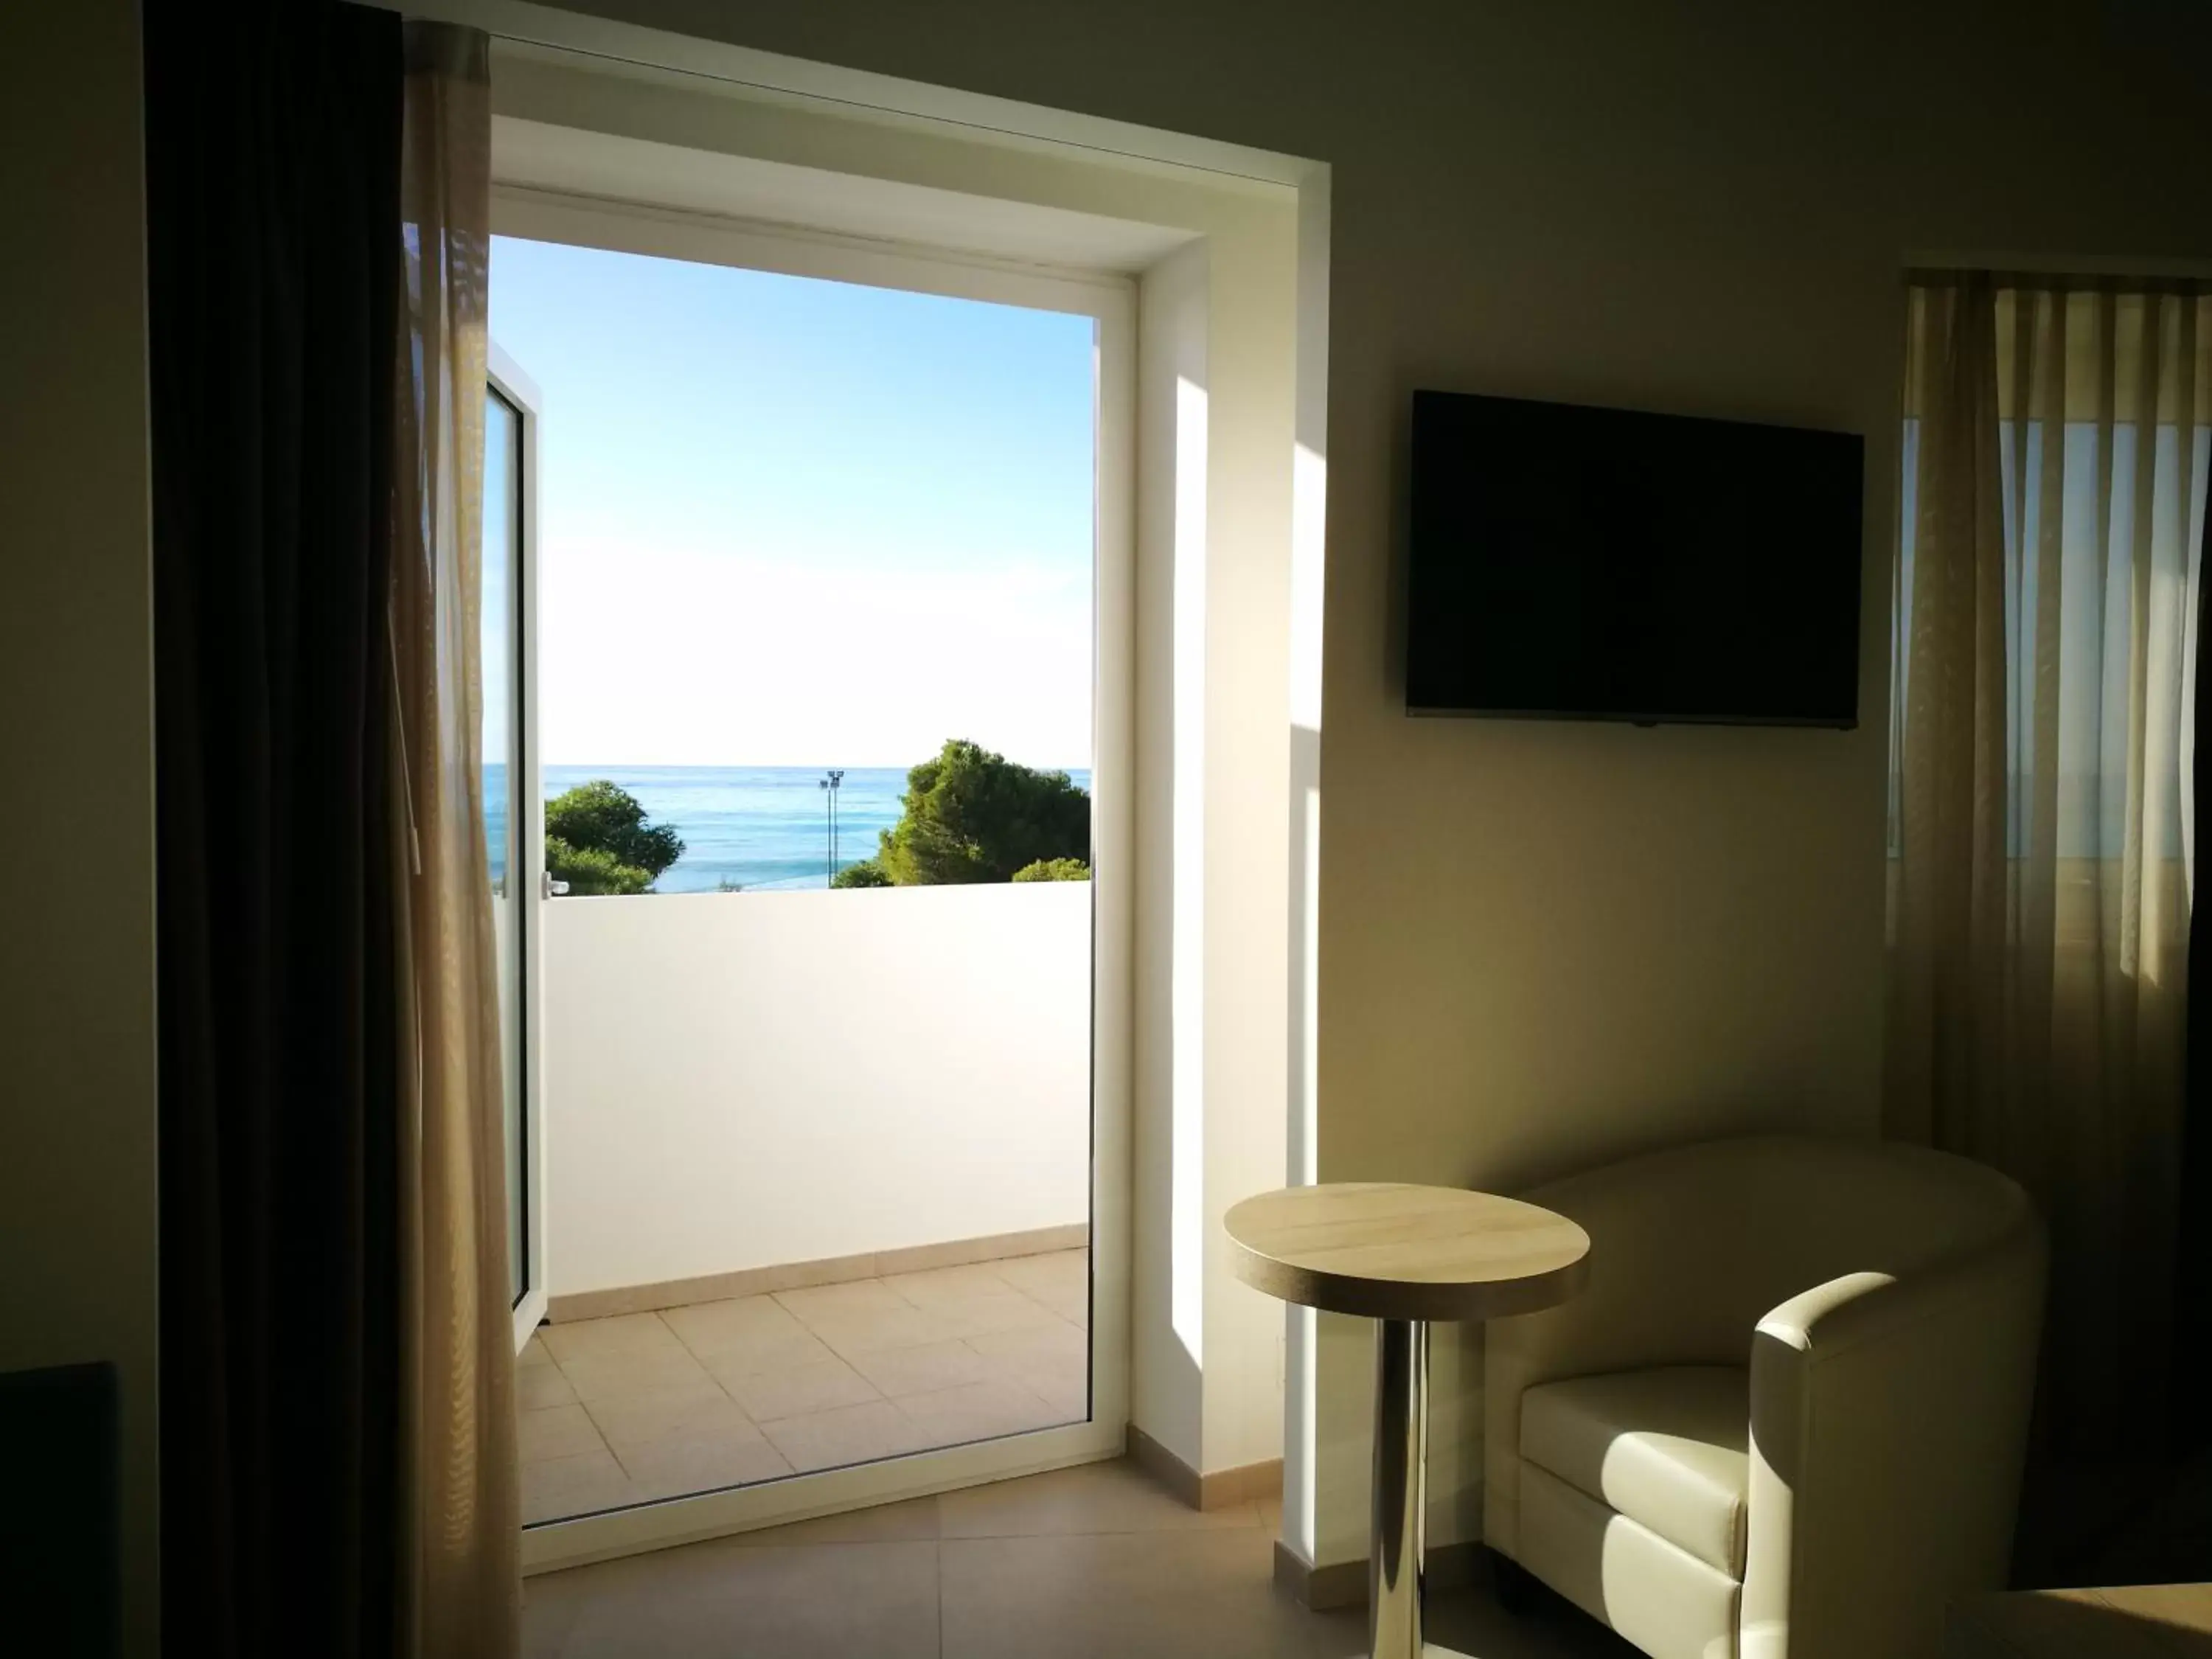 Sea view in Hotel Santa Caterina Village Club